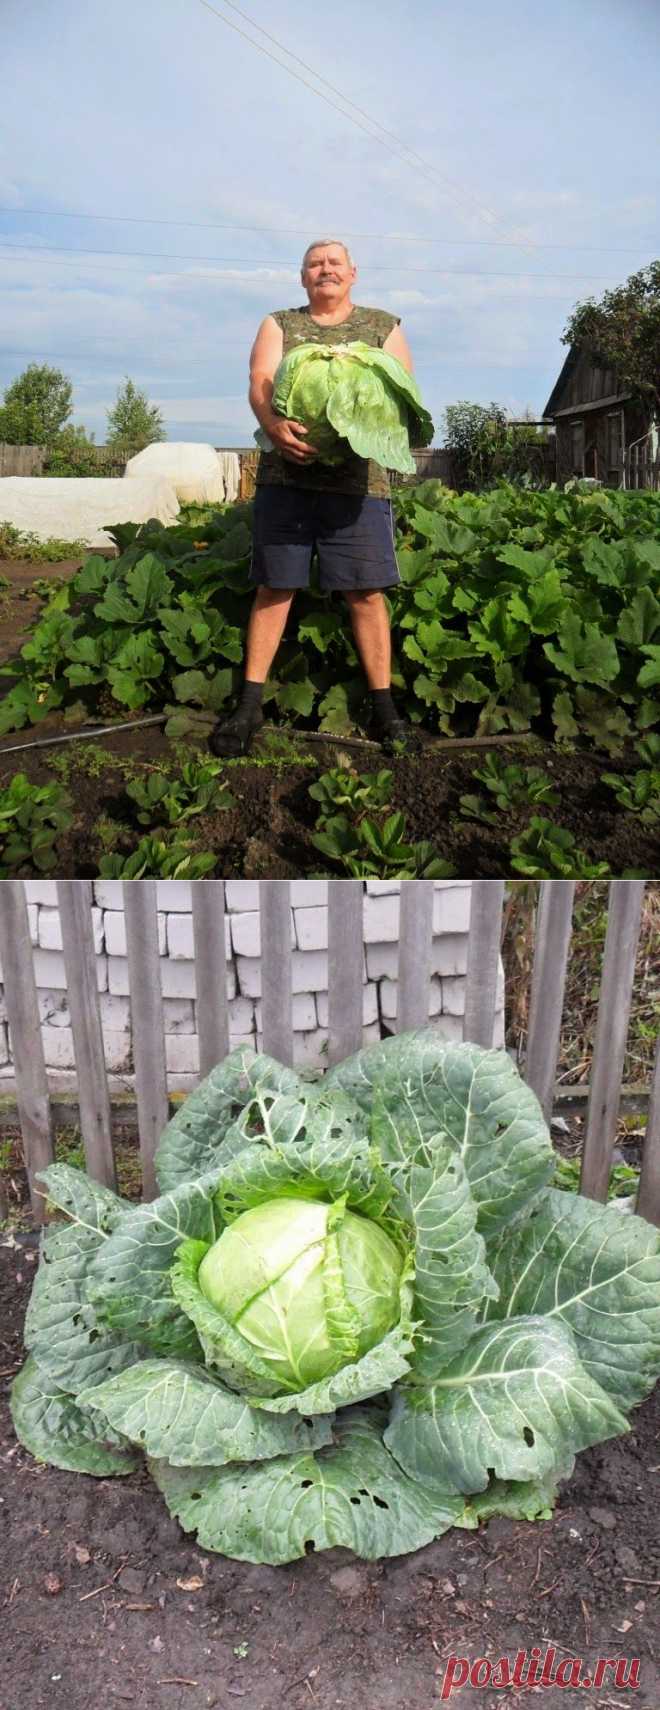 Как я получаю капусту без выращивания домашней рассады